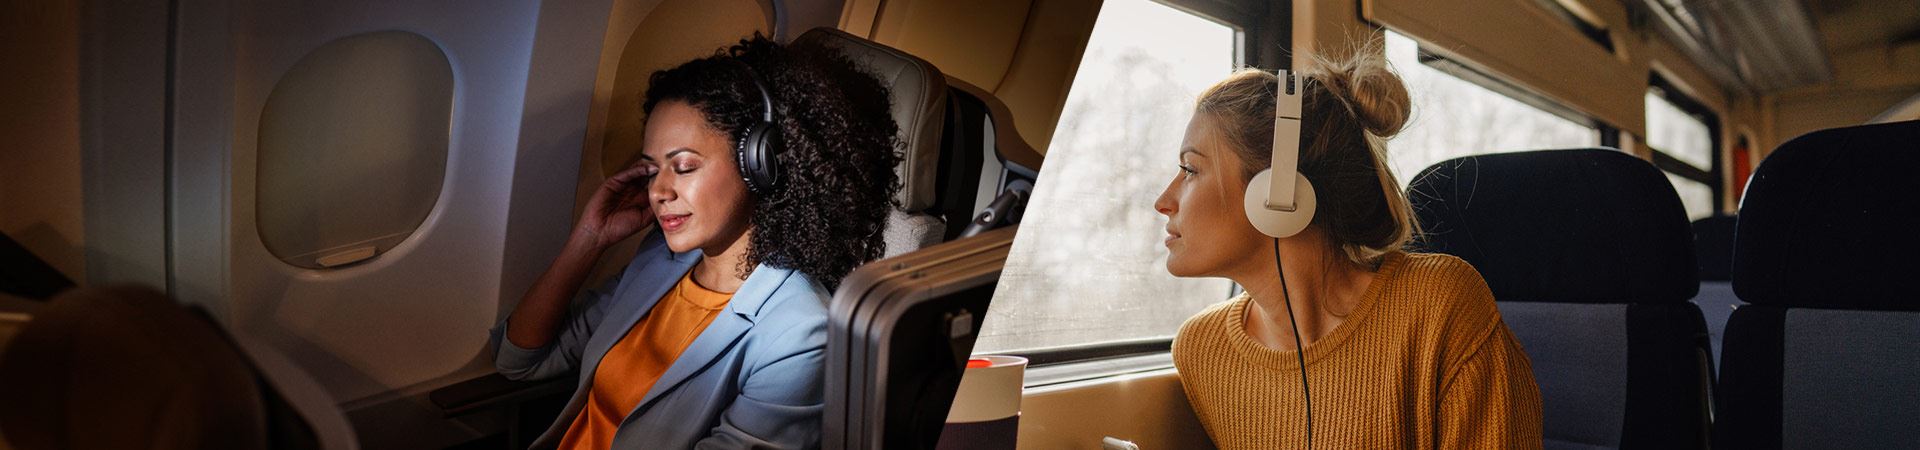 Links ein Foto einer Frau, die bequem in einem Flugzeug sitzt. Rechts ein Foto einer anderen Frau, die in einem Zug sitzt und aus dem Fenster schaut. Beide haben Kopfhörer auf. Die Atmosphäre im Flugzeug und im Zug ist ruhig, keine anderen Menschen sind zu sehen. 